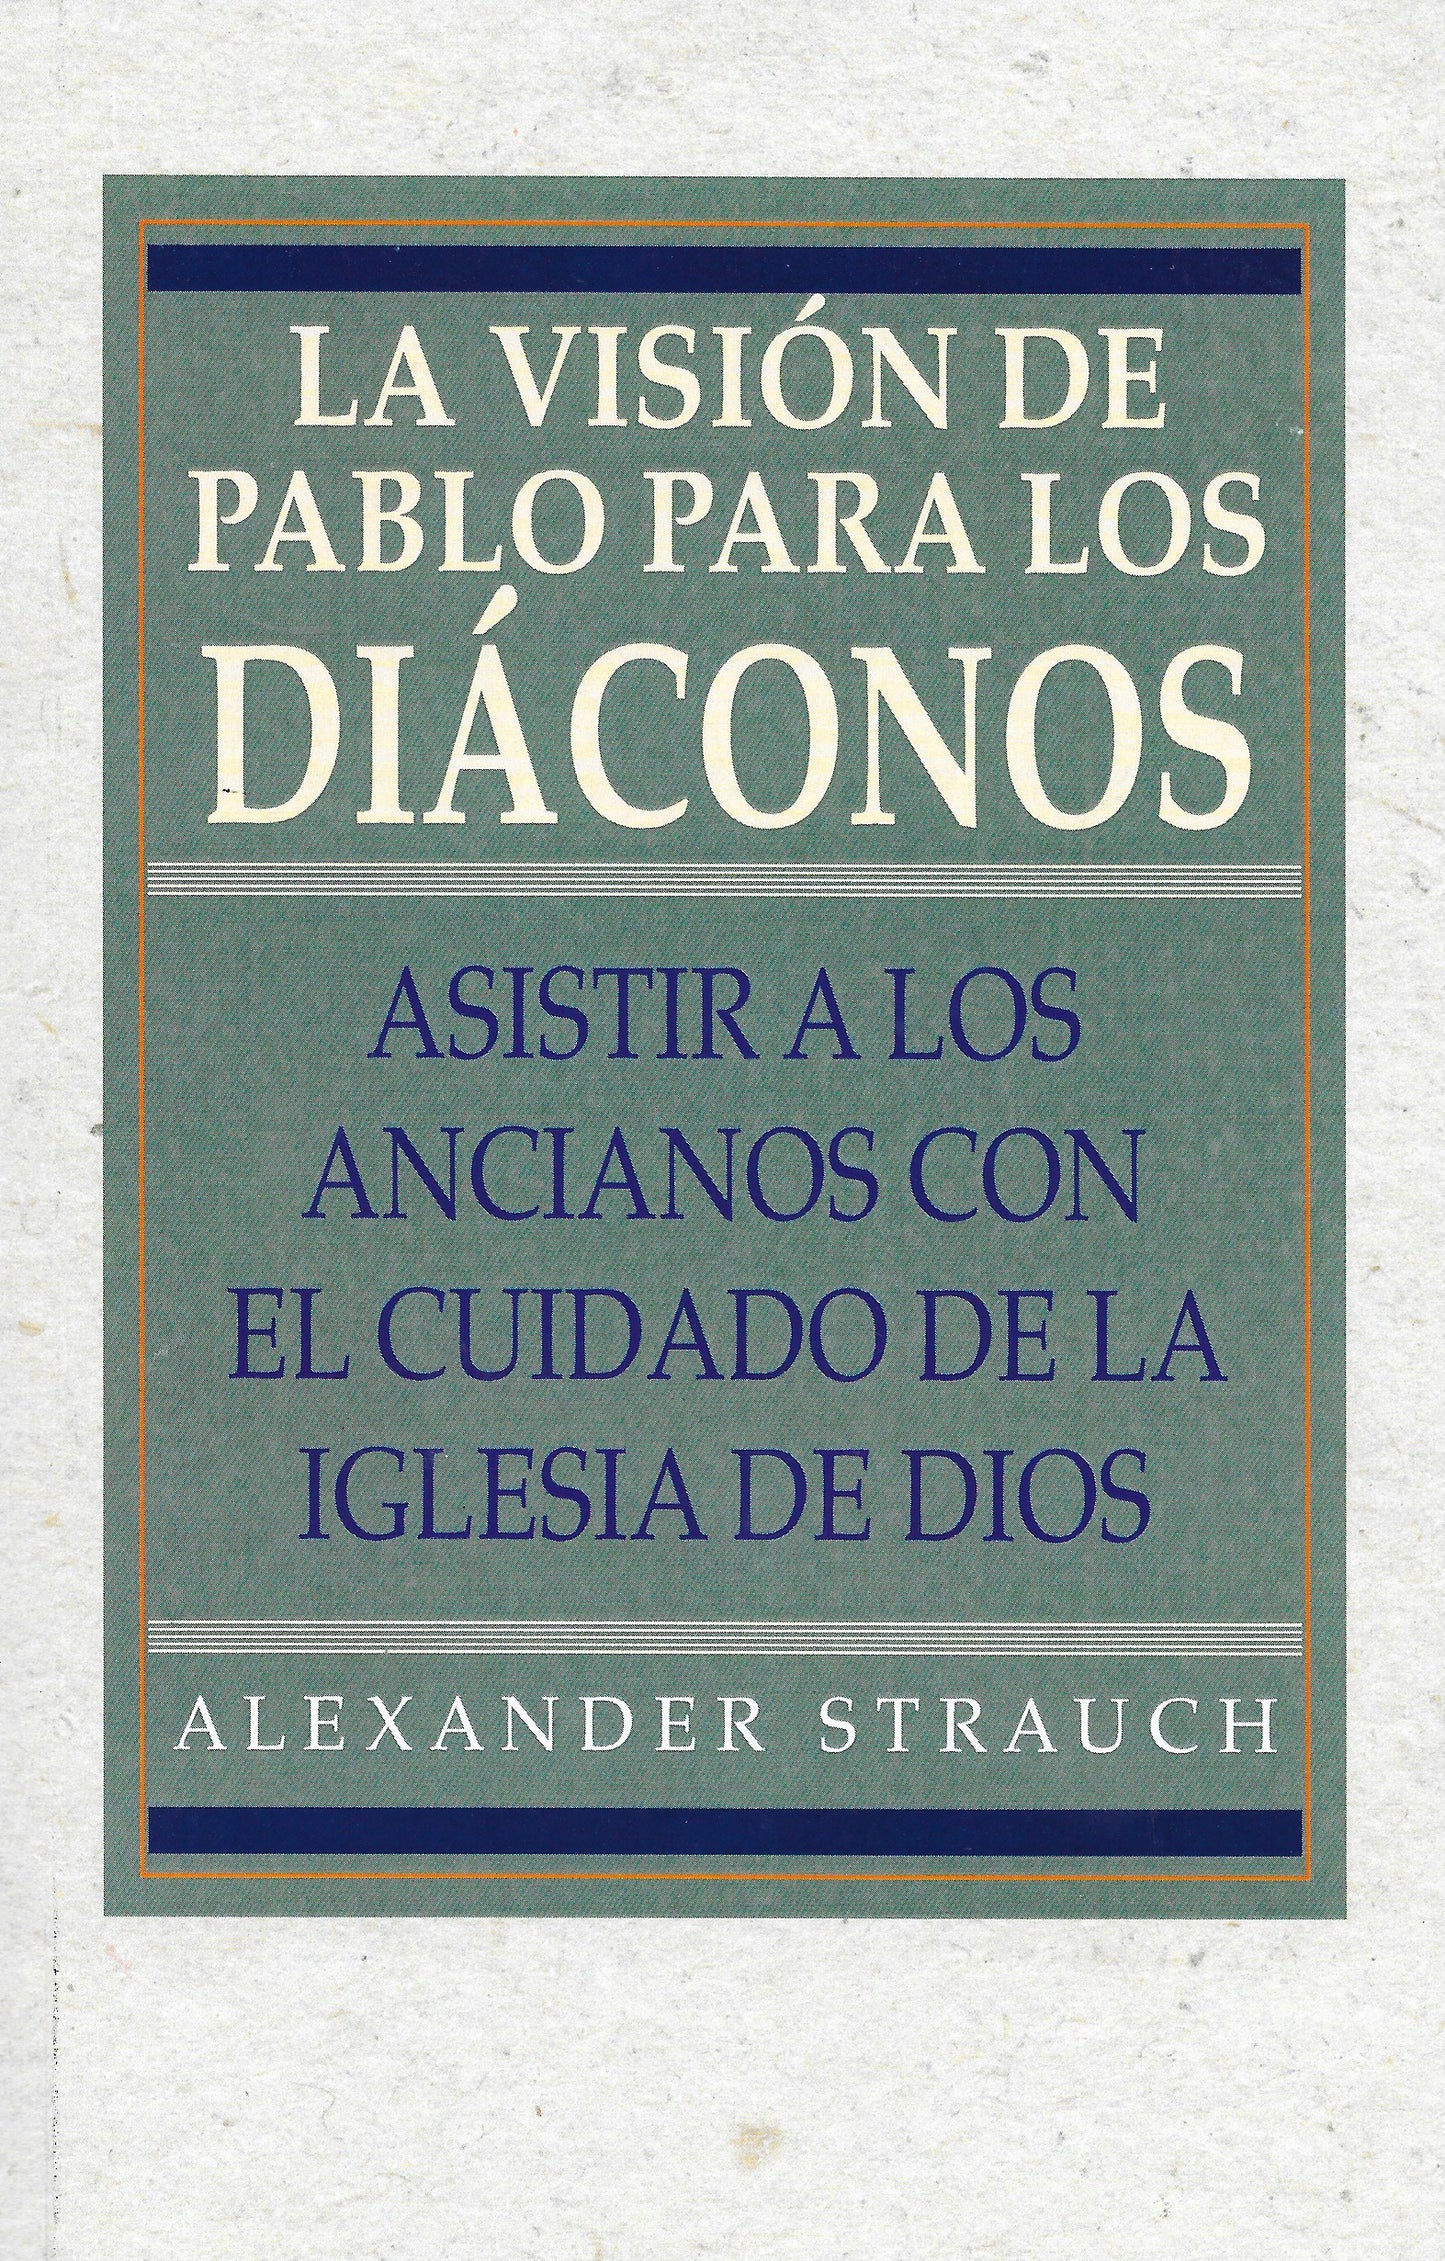 La visión de pablo para los diáconos por Alexander Strauch (Paul’s Vision for the Deacons)